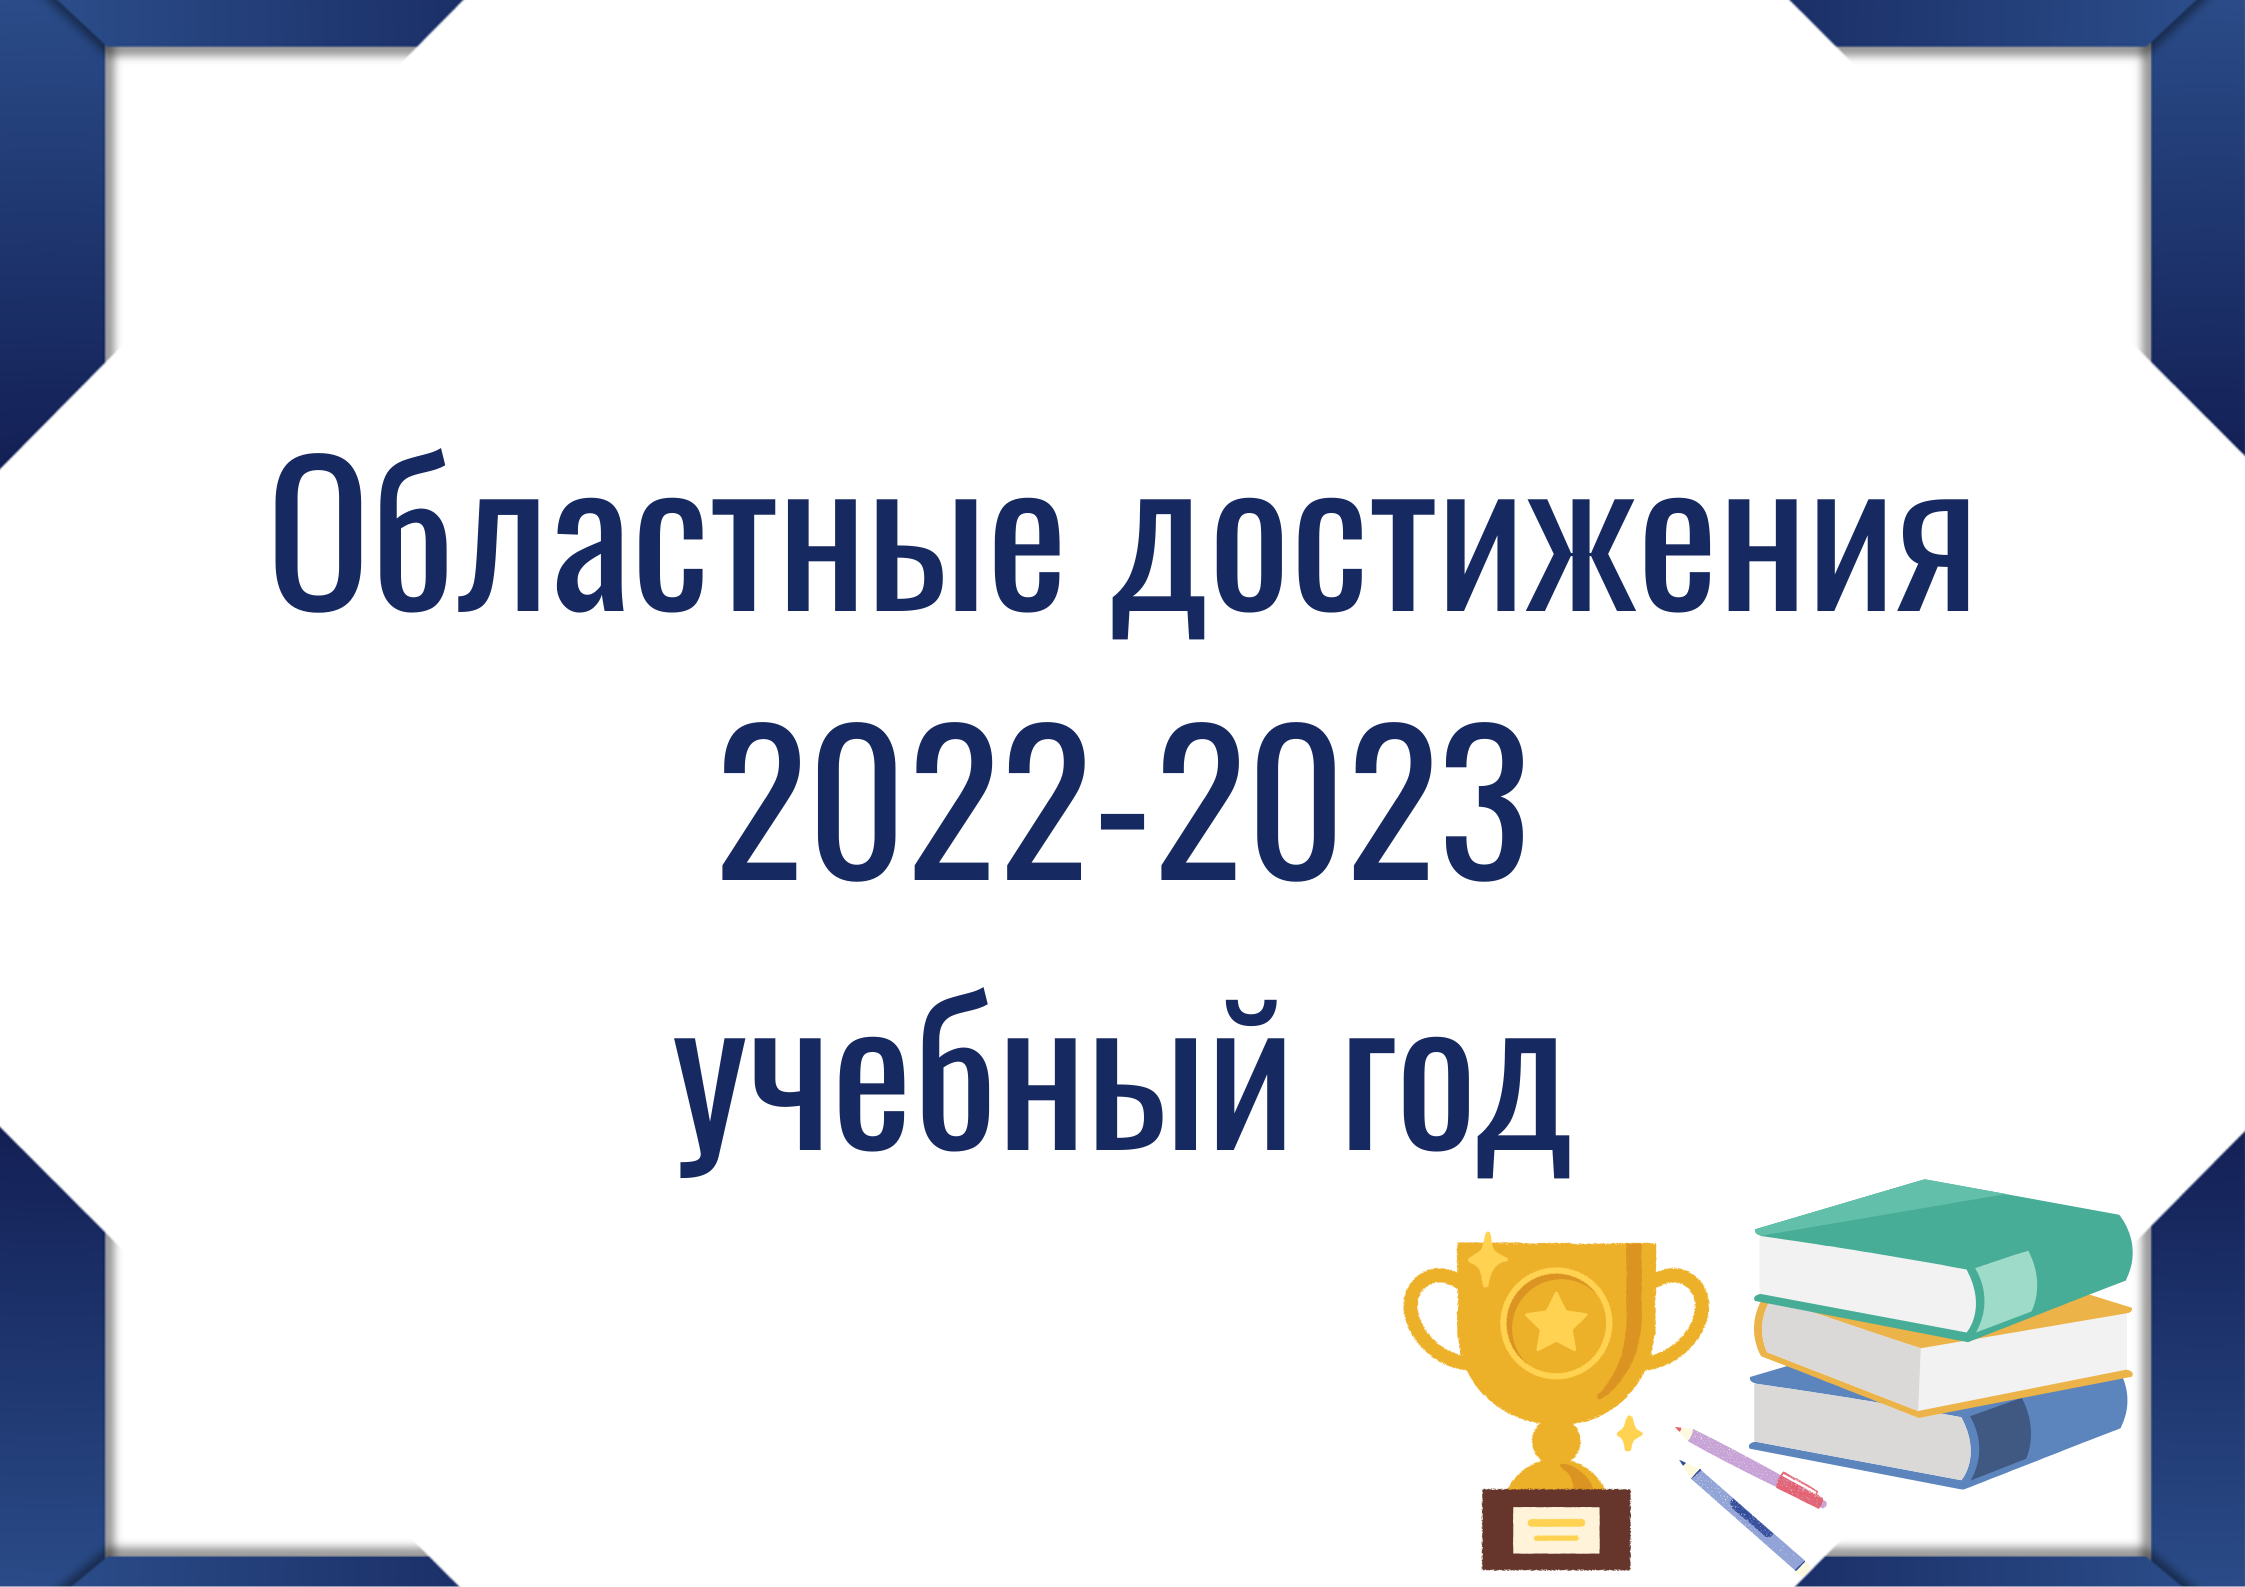 Кнопка "Областные достижения 2022-2023"